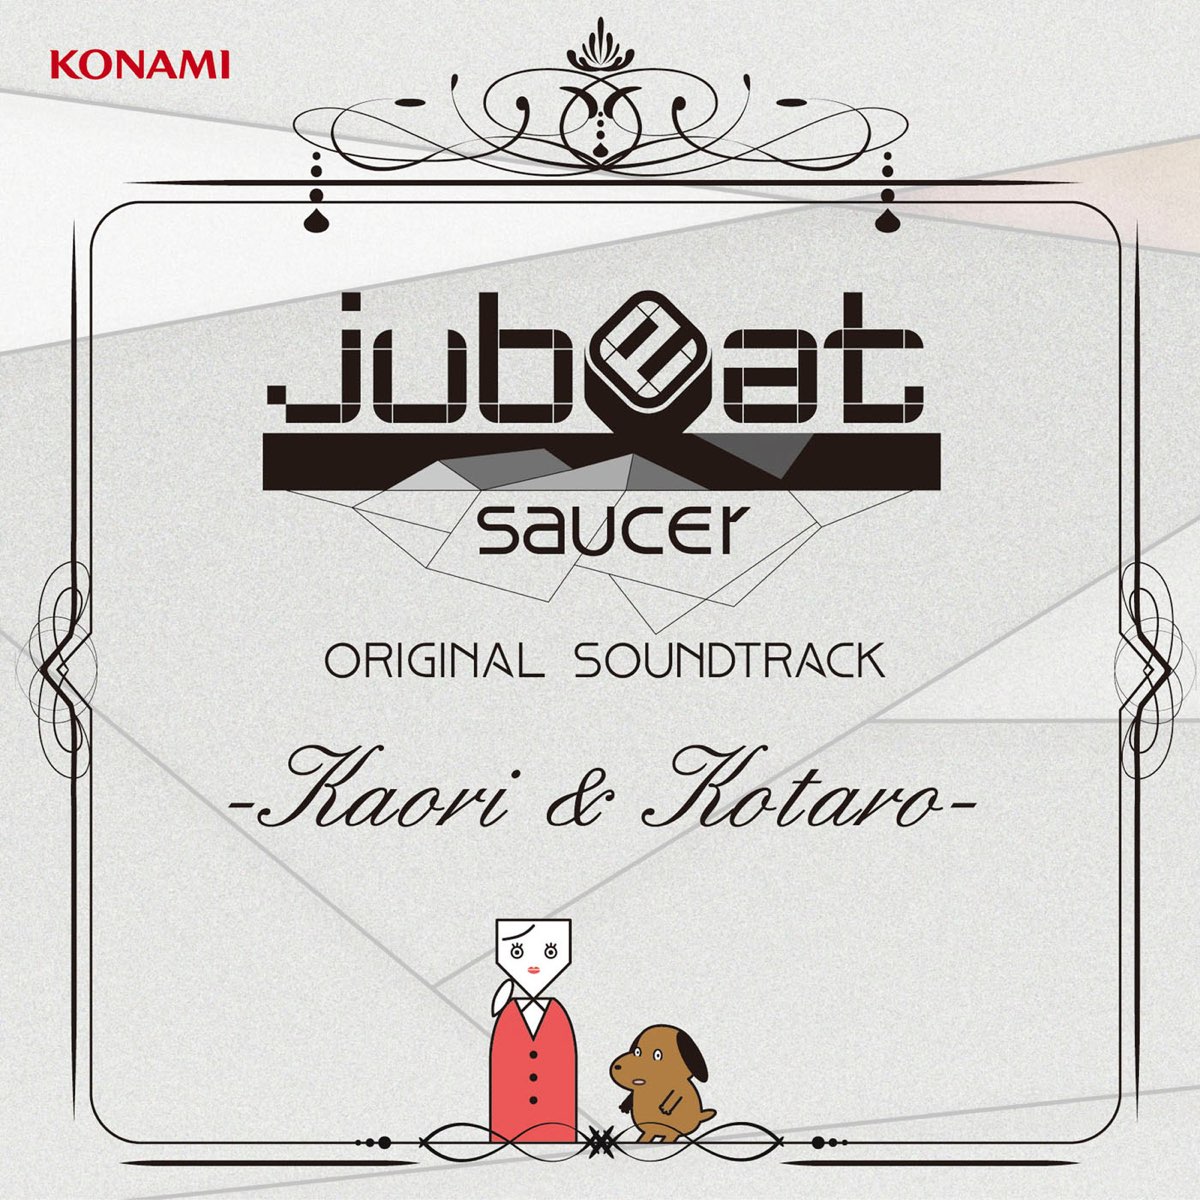 Jubeat Saucer Original Soundtrack Kaori Kotaro By Various Artists On Itunes